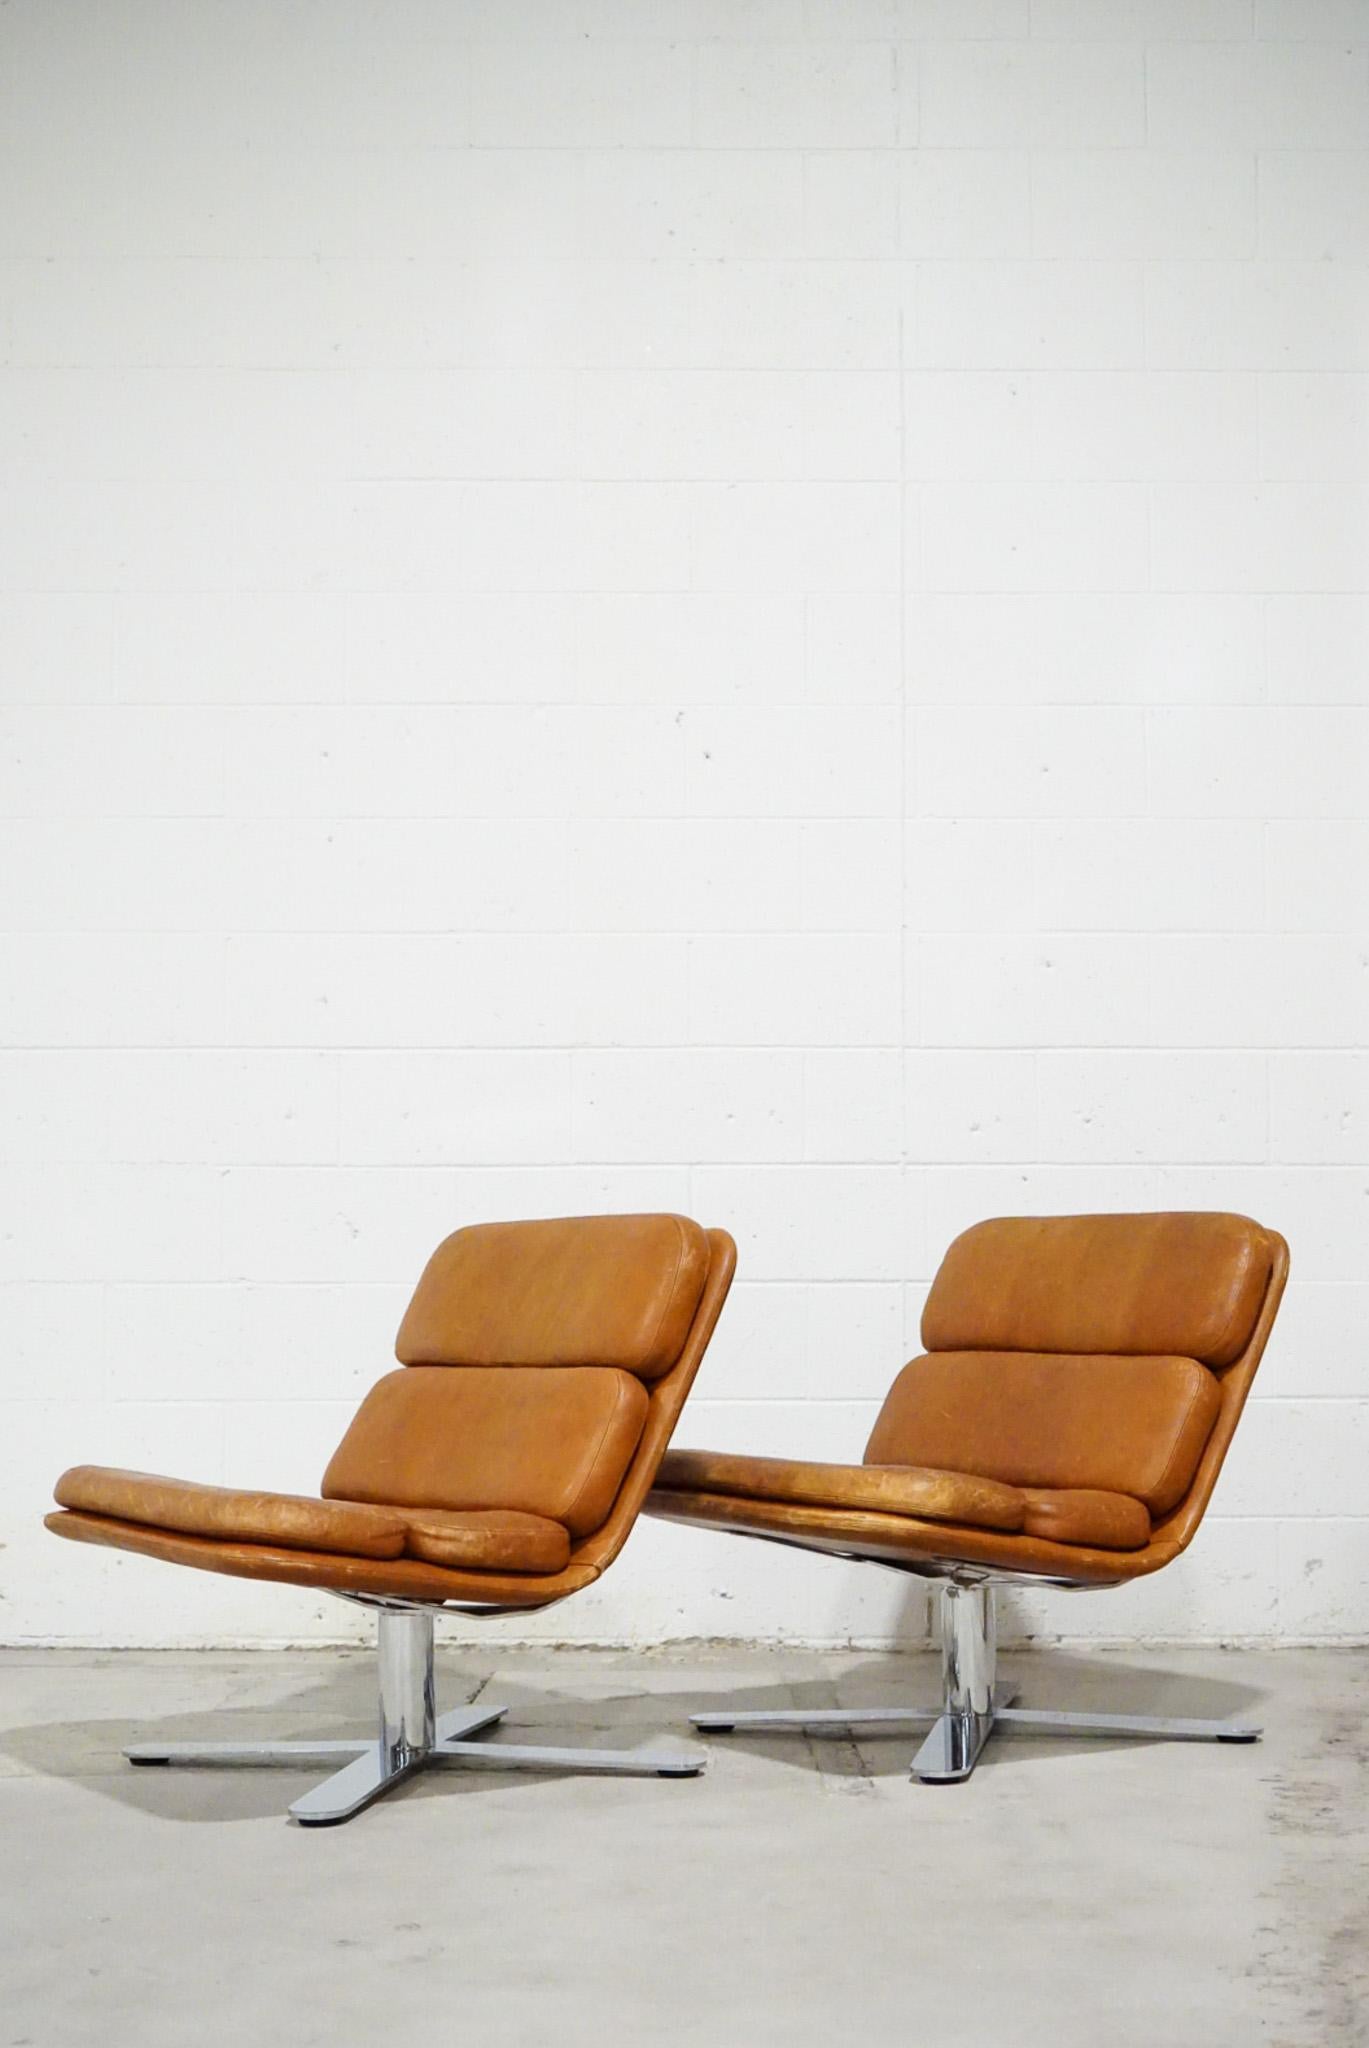 Ein schönes, patiniertes Paar Vintage-Sessel aus Leder und Chrom, entworfen von John Follis, 1970er Jahre.
 
Sie sind bekannt als die 